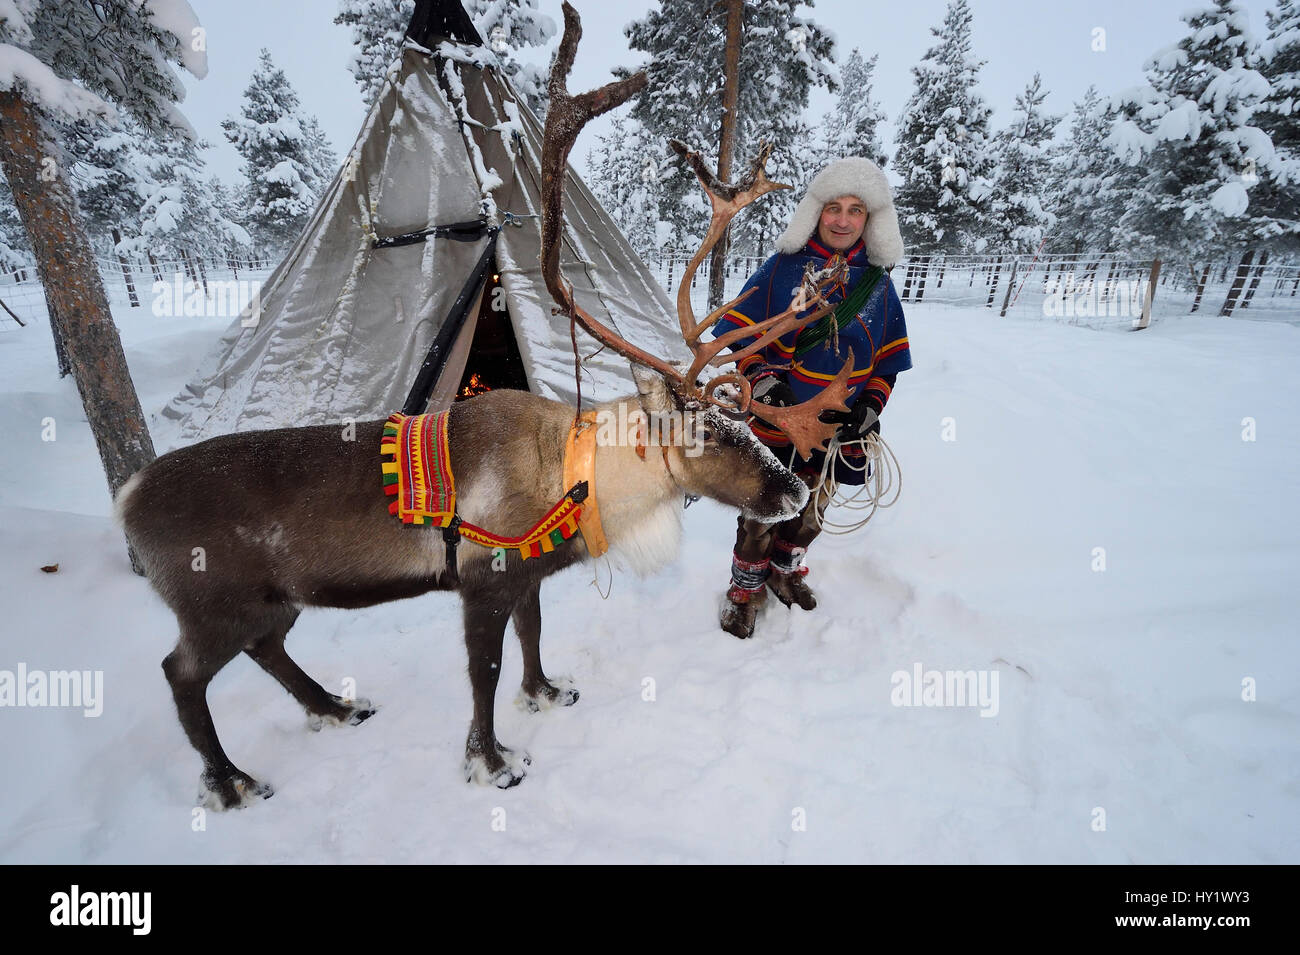 Homme avec Sami pour traîneau à rennes - 25 C, Jukkasjarvi, Laponie, Laponia, la Suède. Janvier 2016. Parution du modèle. Banque D'Images